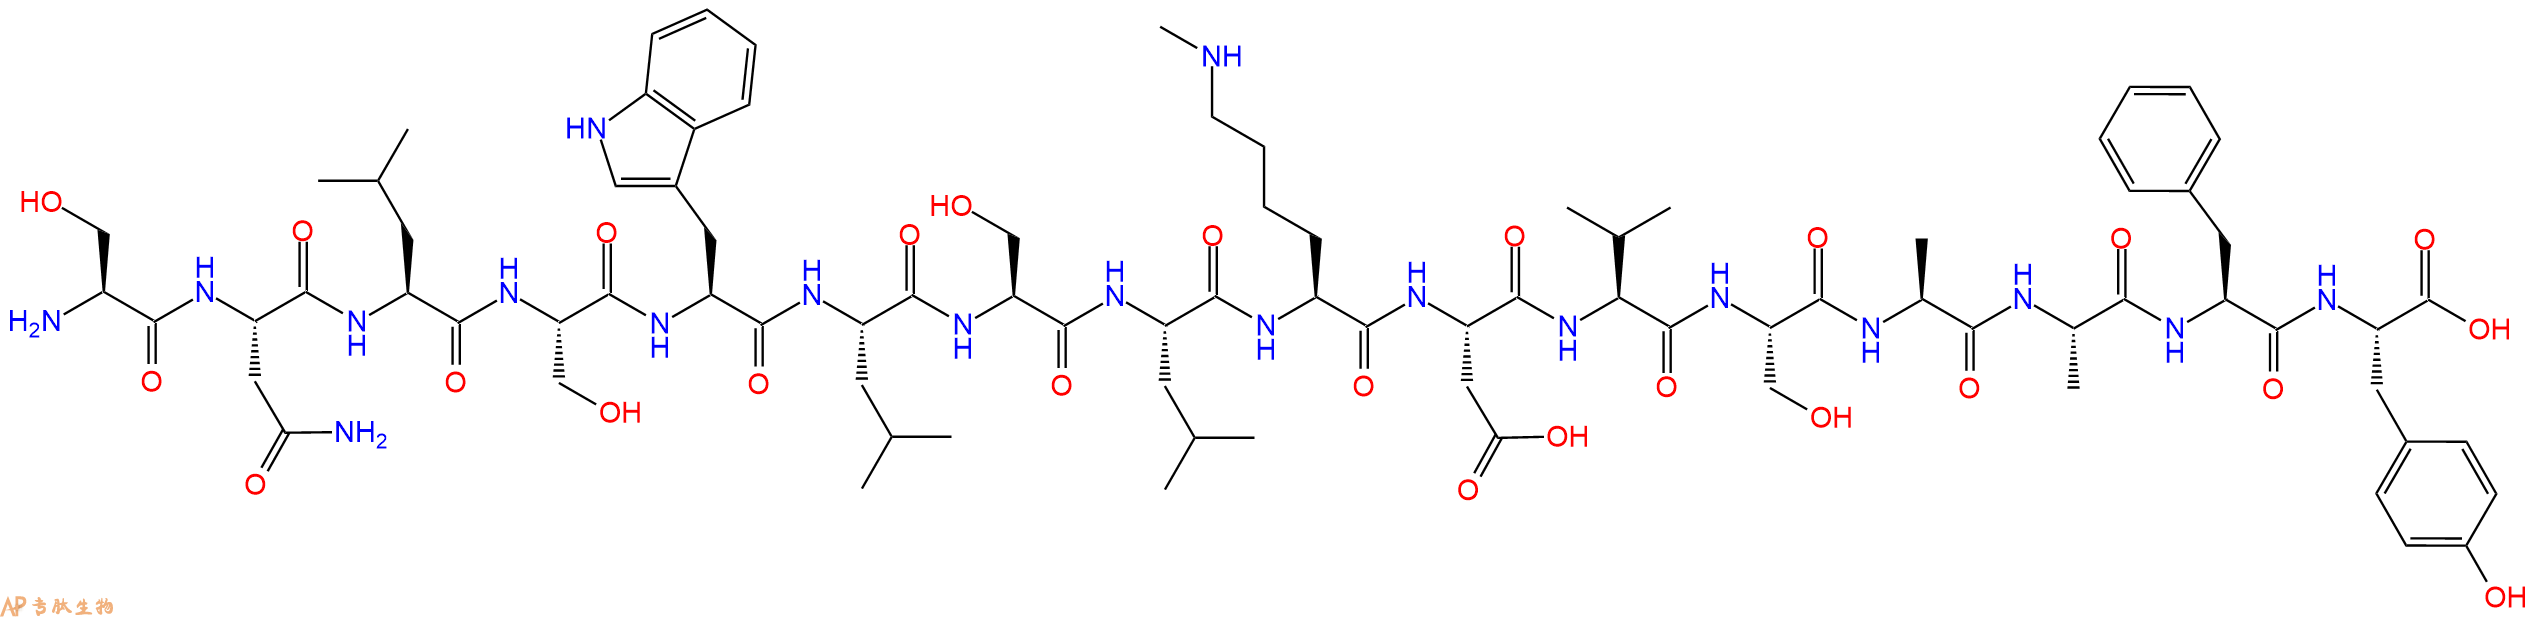 专肽生物产品H2N-Ser-Asn-Leu-Ser-Trp-Leu-Ser-Leu-Lys(Me)-Asp-Va